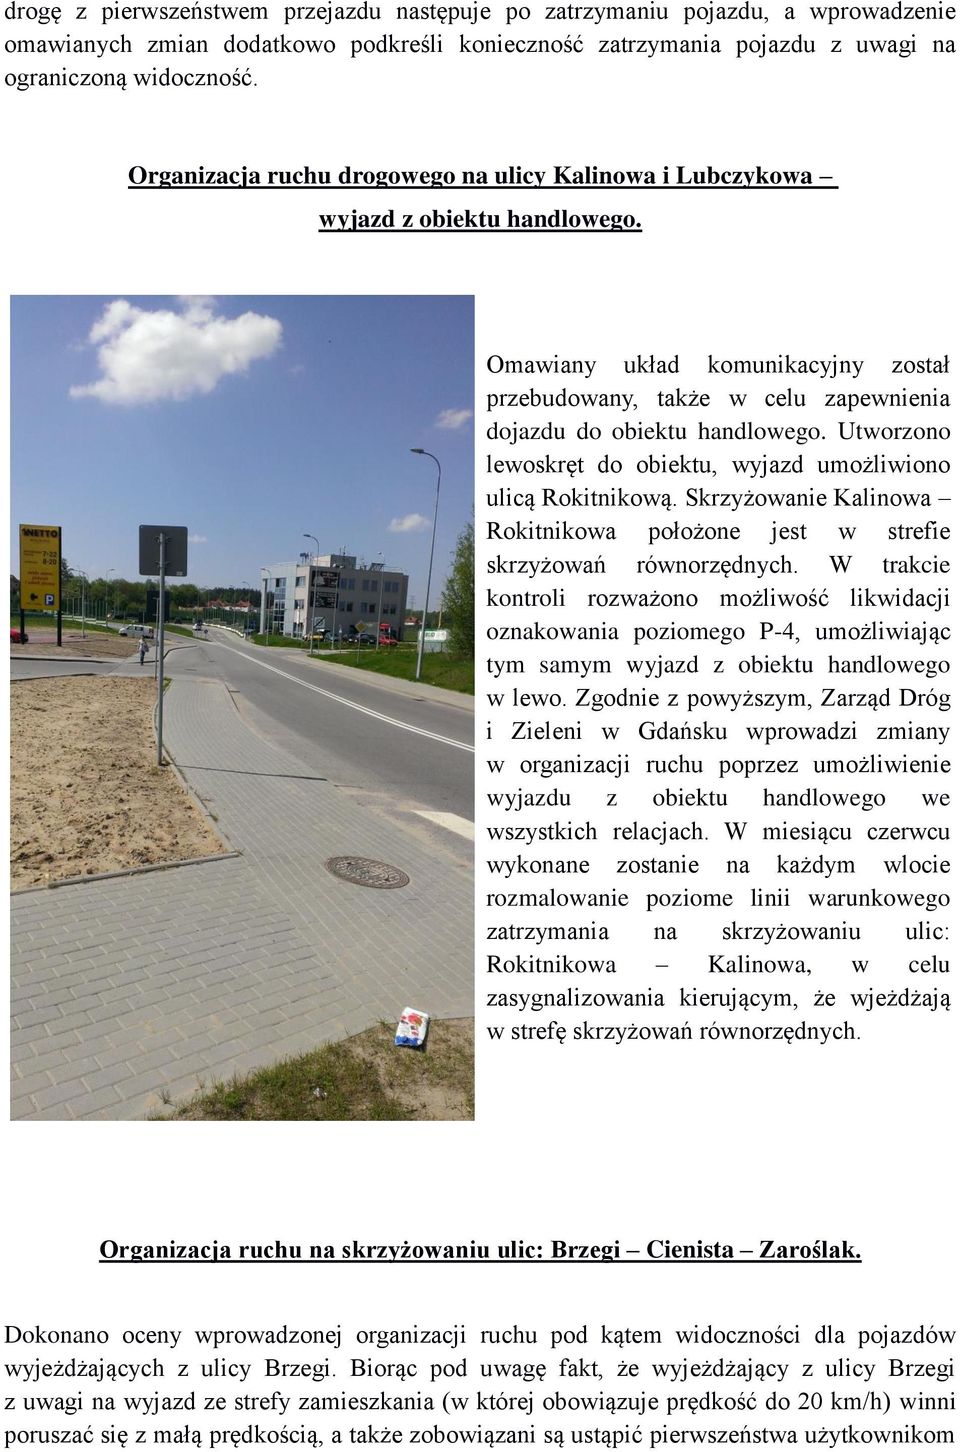 Utworzono lewoskręt do obiektu, wyjazd umożliwiono ulicą Rokitnikową. Skrzyżowanie Kalinowa Rokitnikowa położone jest w strefie skrzyżowań równorzędnych.